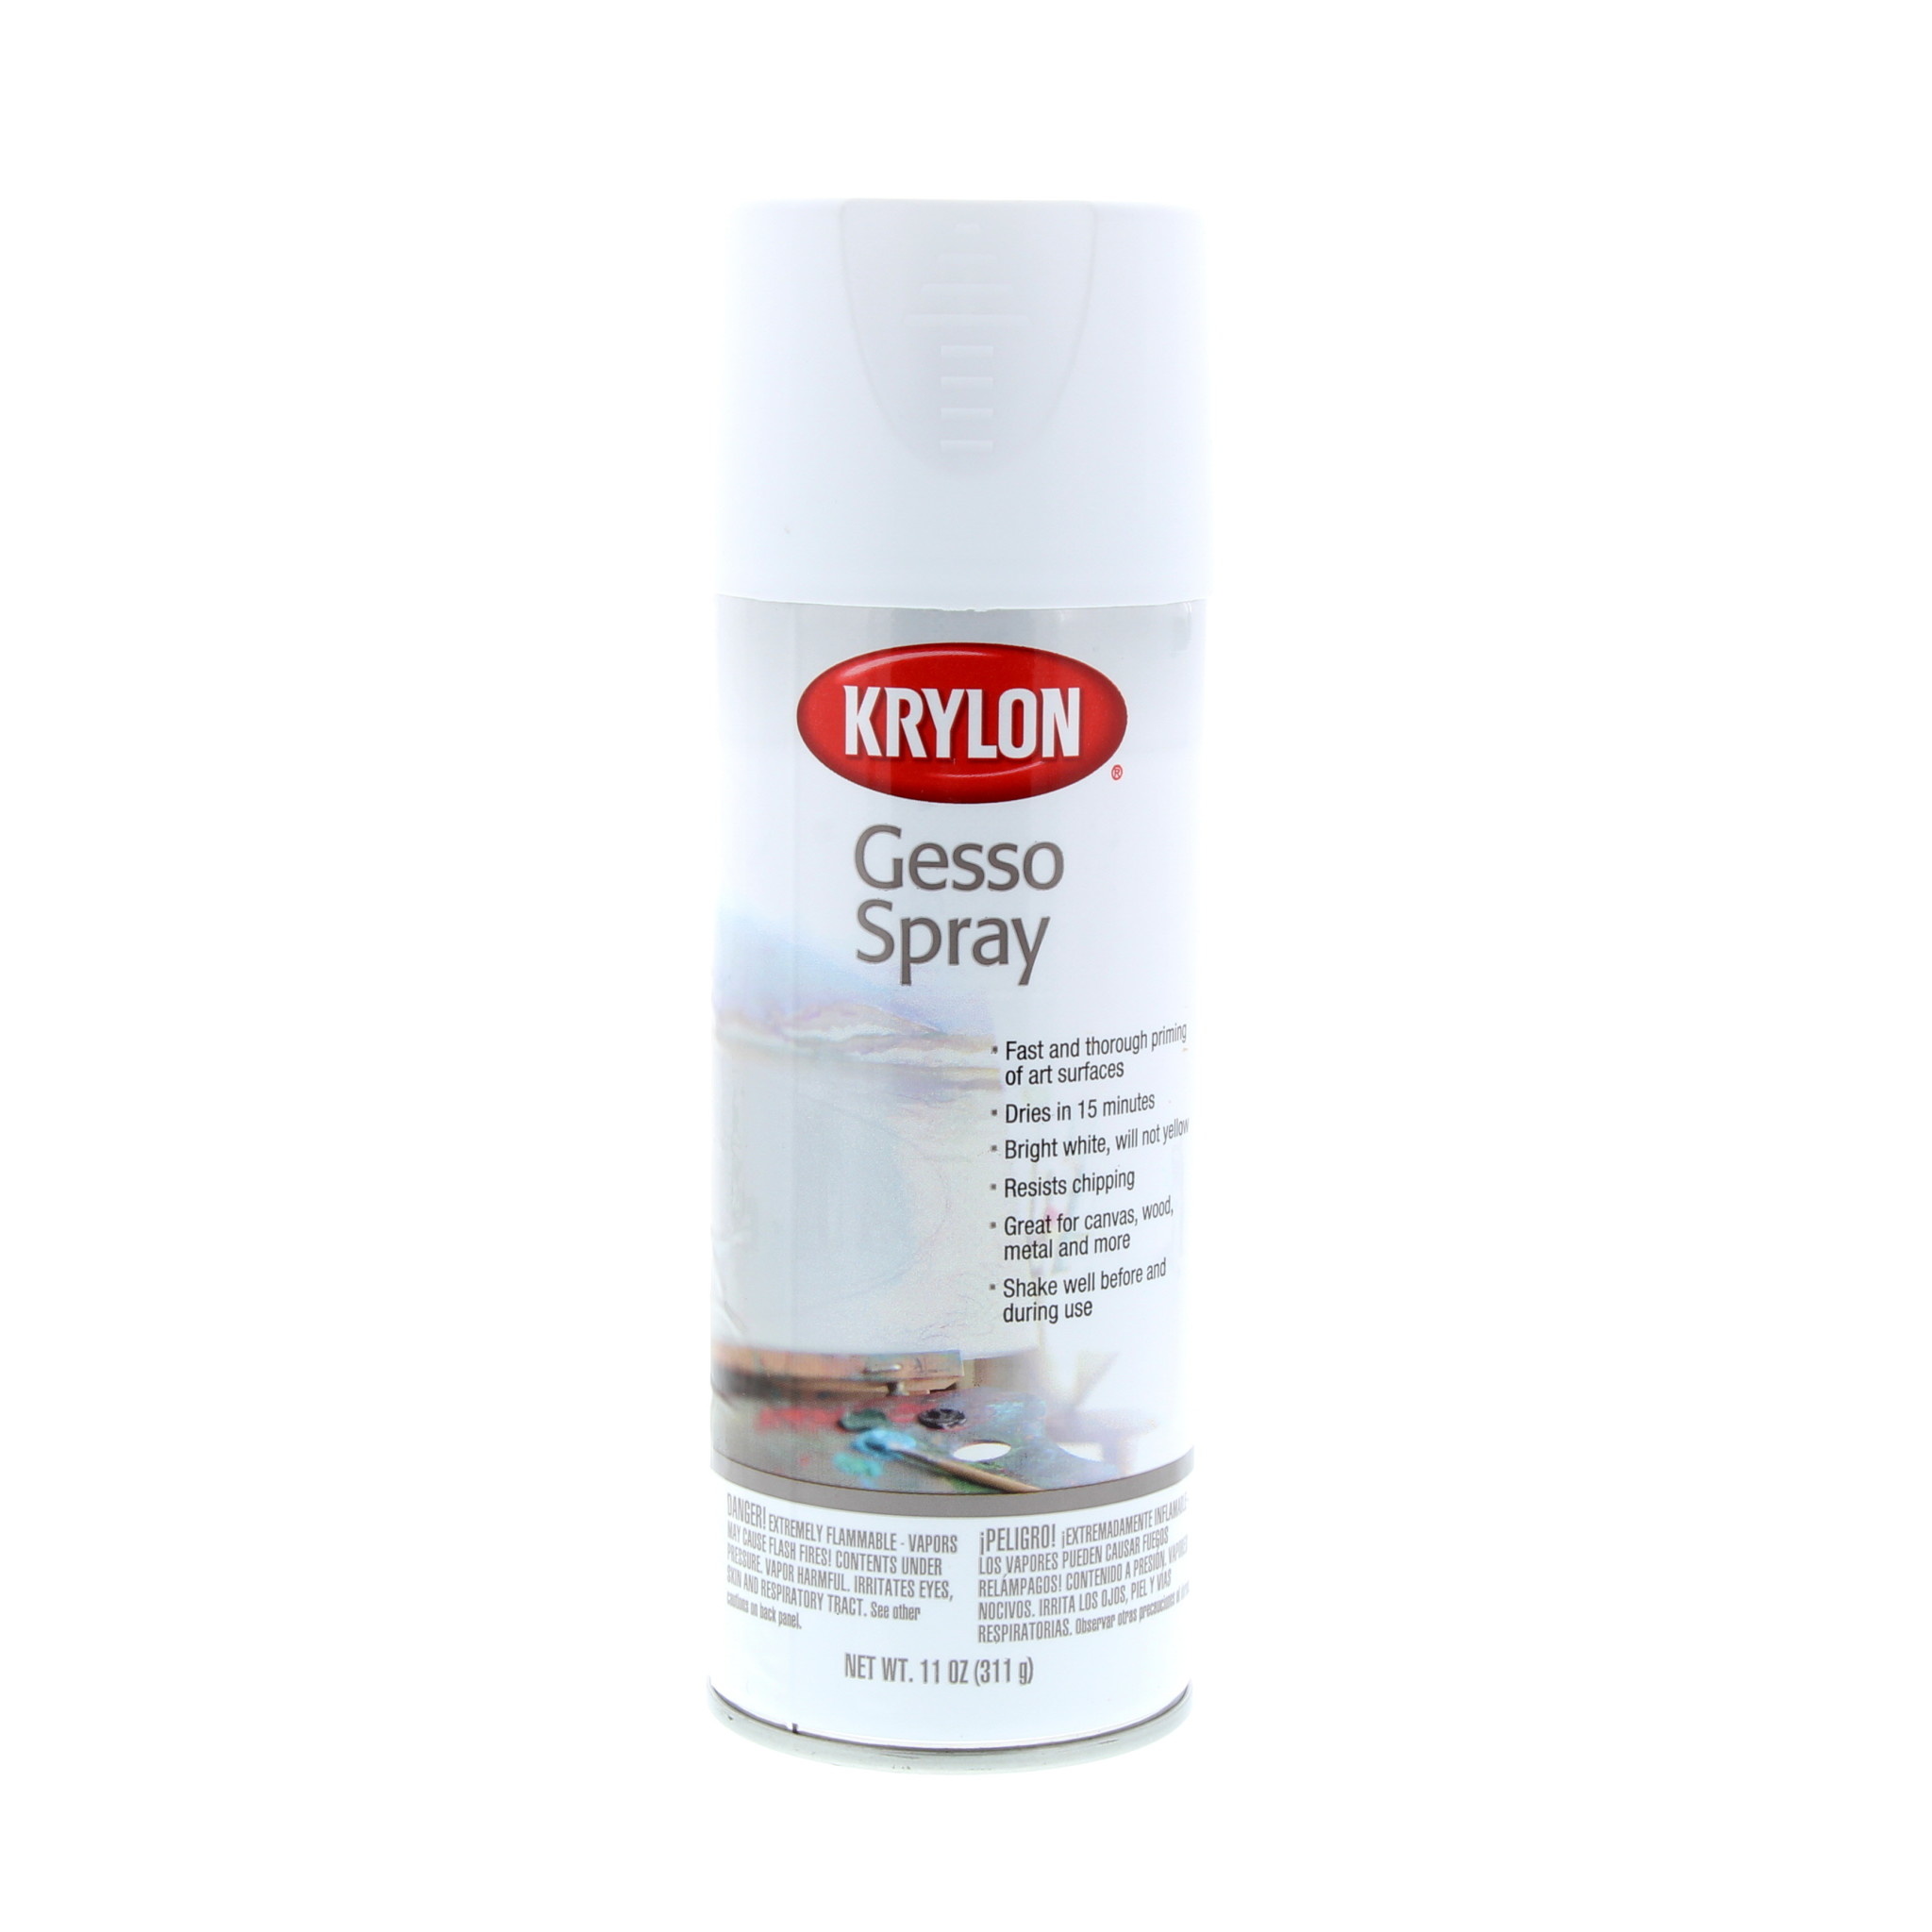 Krylon Workable Fixatif Spray 11 oz